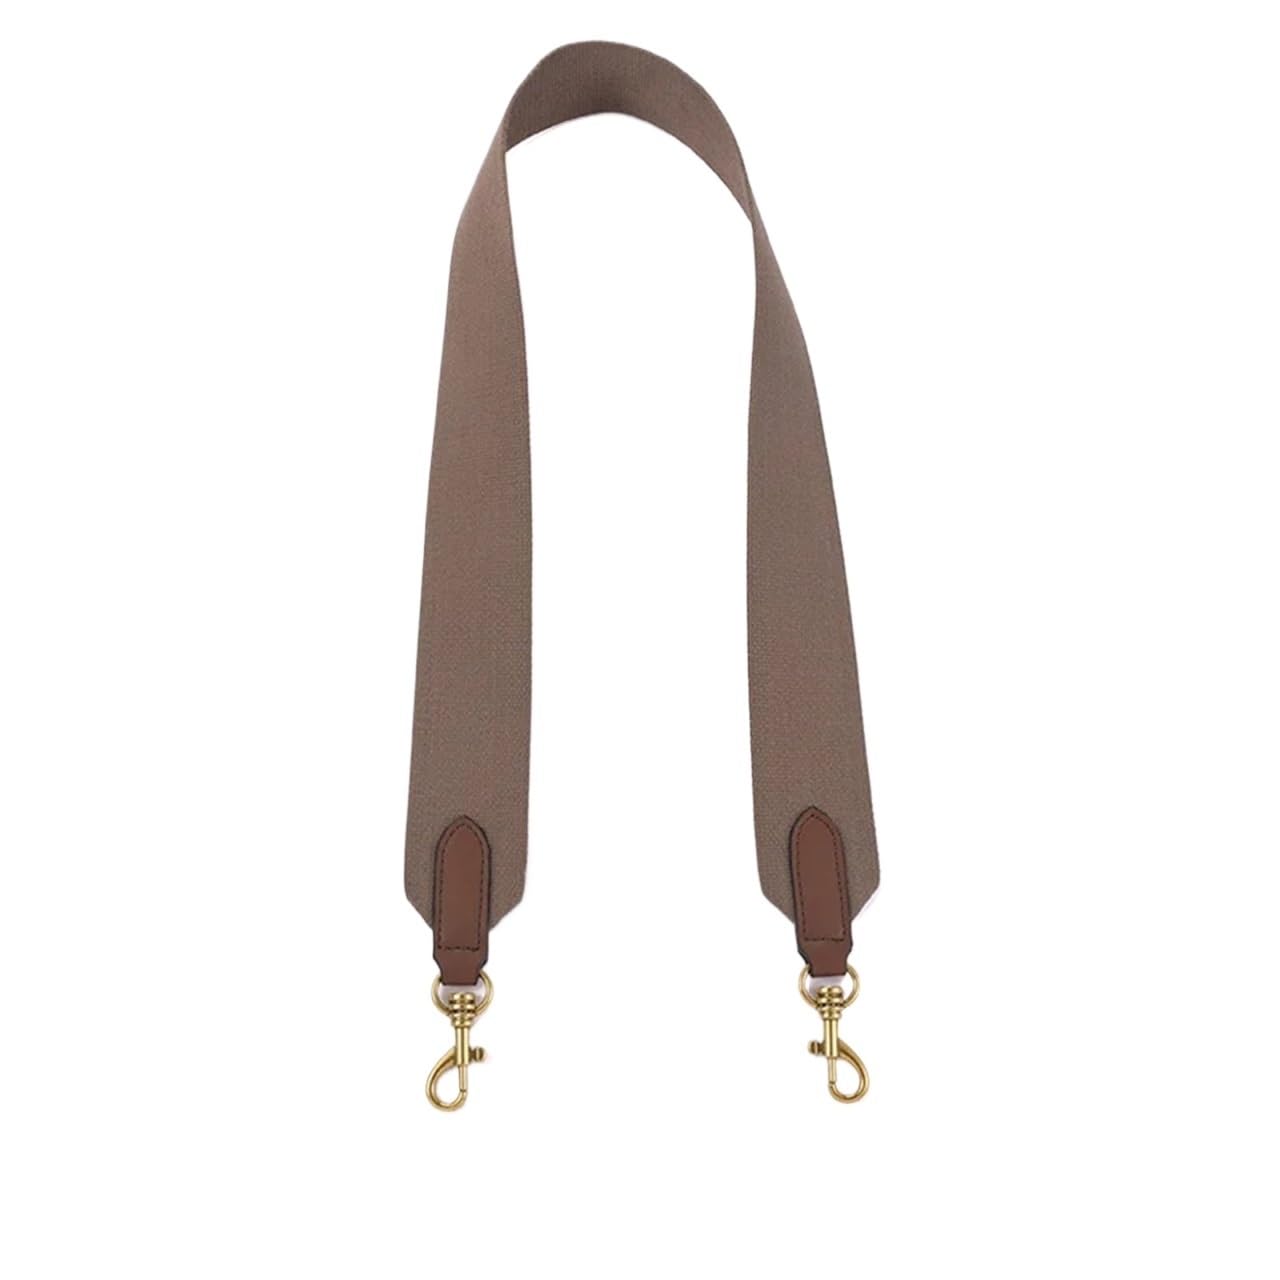 Taschengurt Breit zum Wechseln Cowskin Leather Bag Accessories Shoulder Bag Strap Handbag Wide Belt for Crossbody Bag Belt Replacement Strap 100cm(6num5 100x5cm,Silver buckle) von LYHYDMA